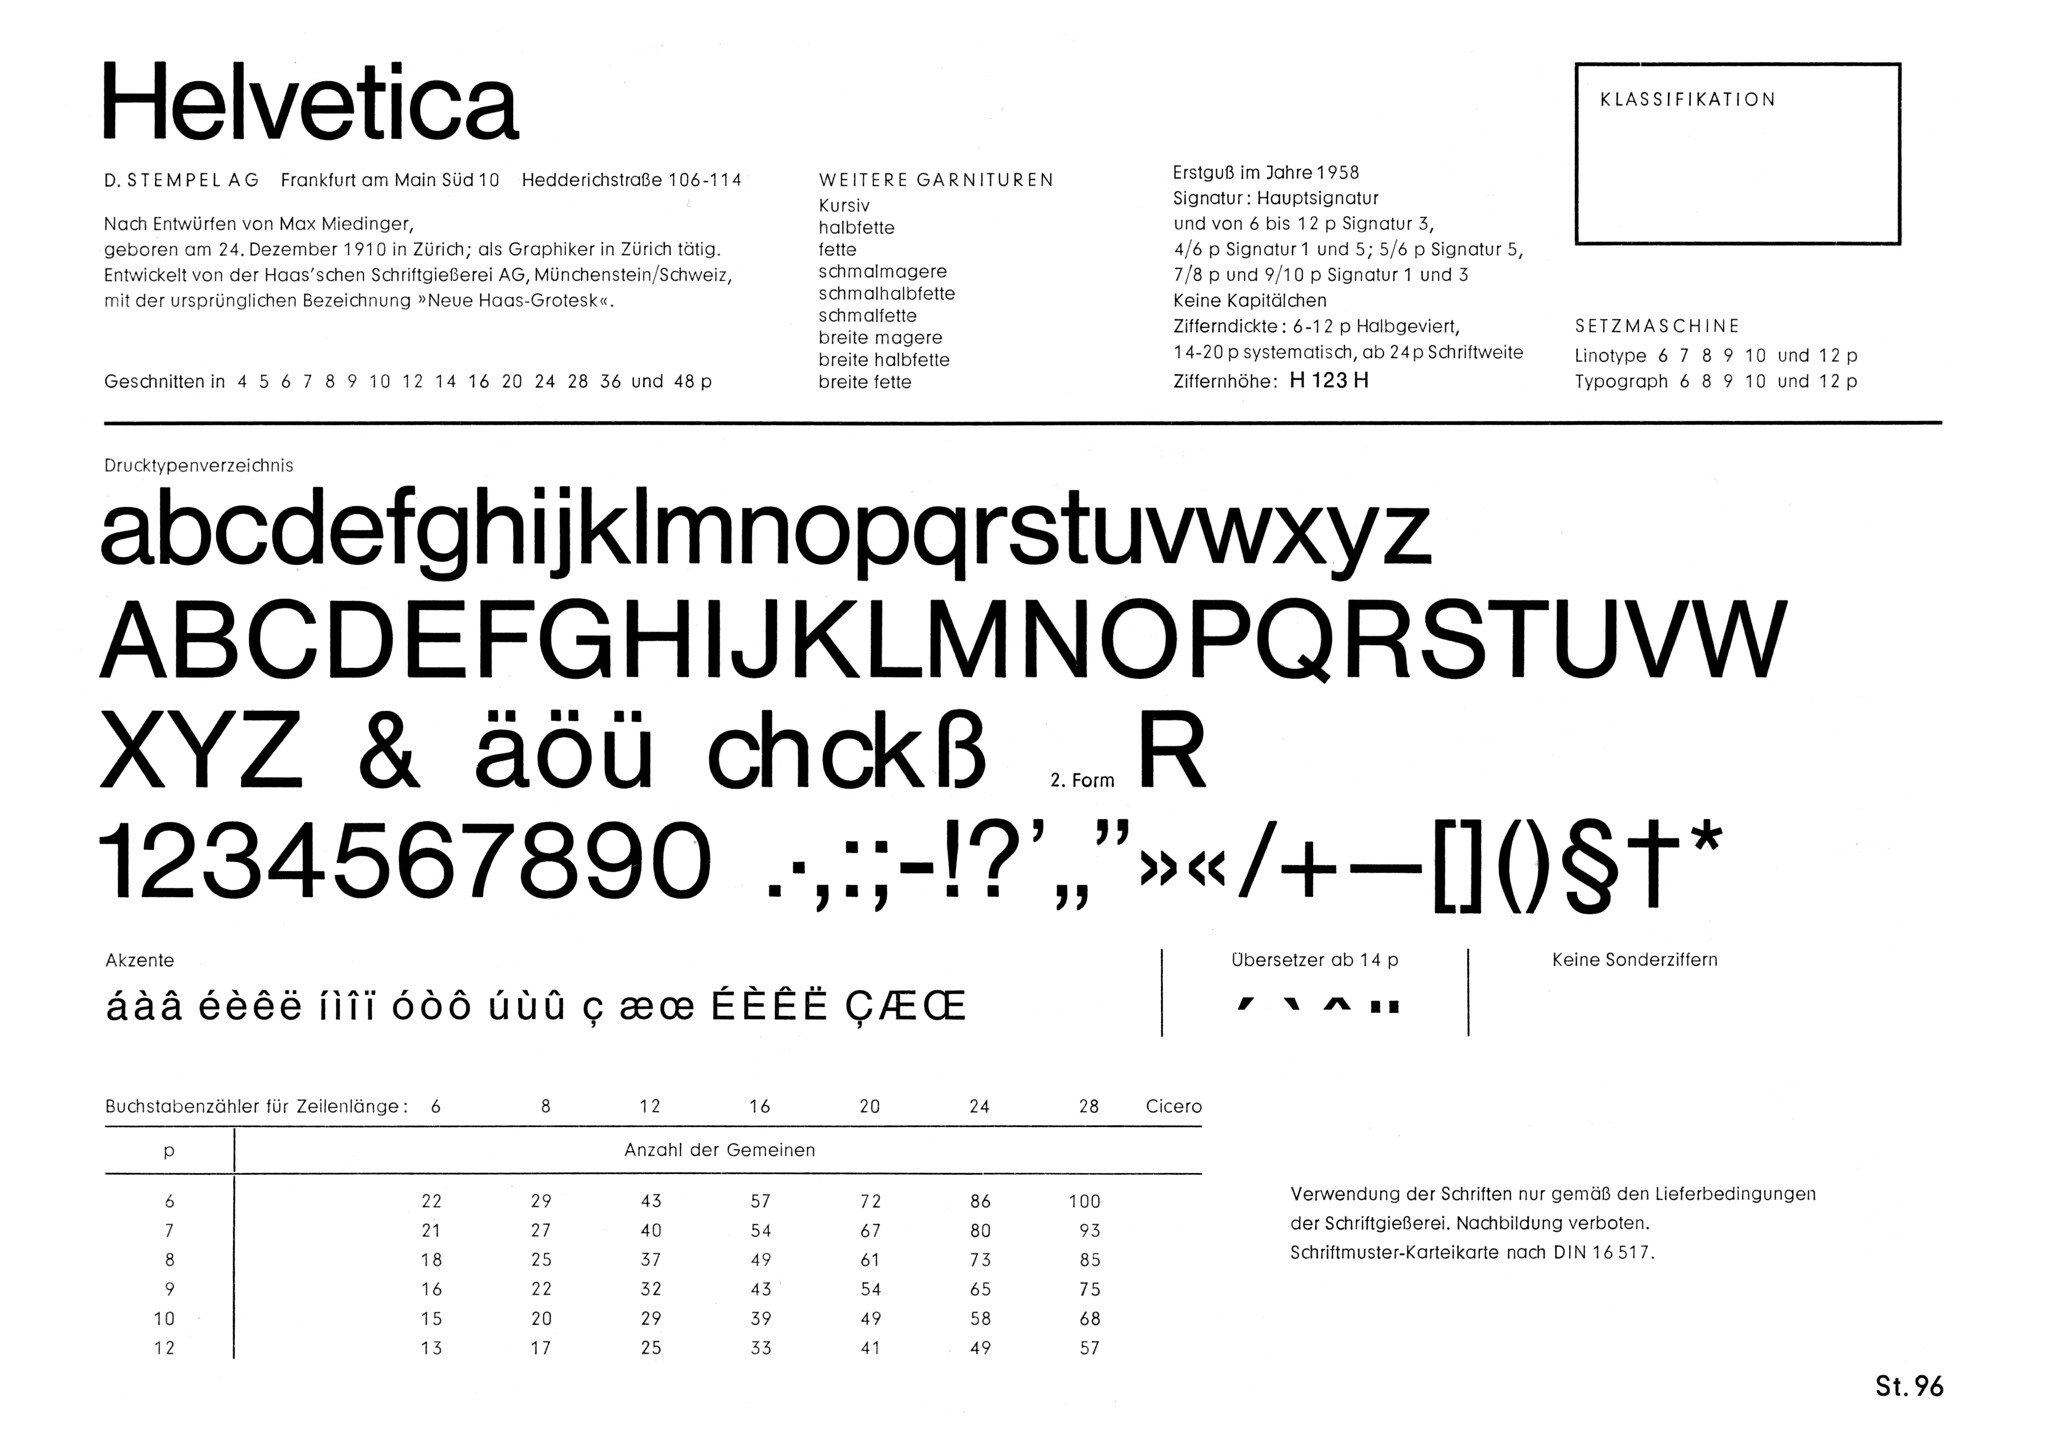 Schriftenkarte der Helvetica (Vorderseite): Auf der Vorderseite ist der vollständige Zeichensatz mit den wesentlichsten Informationen zur Entstehung der Helvetica abgebildet.